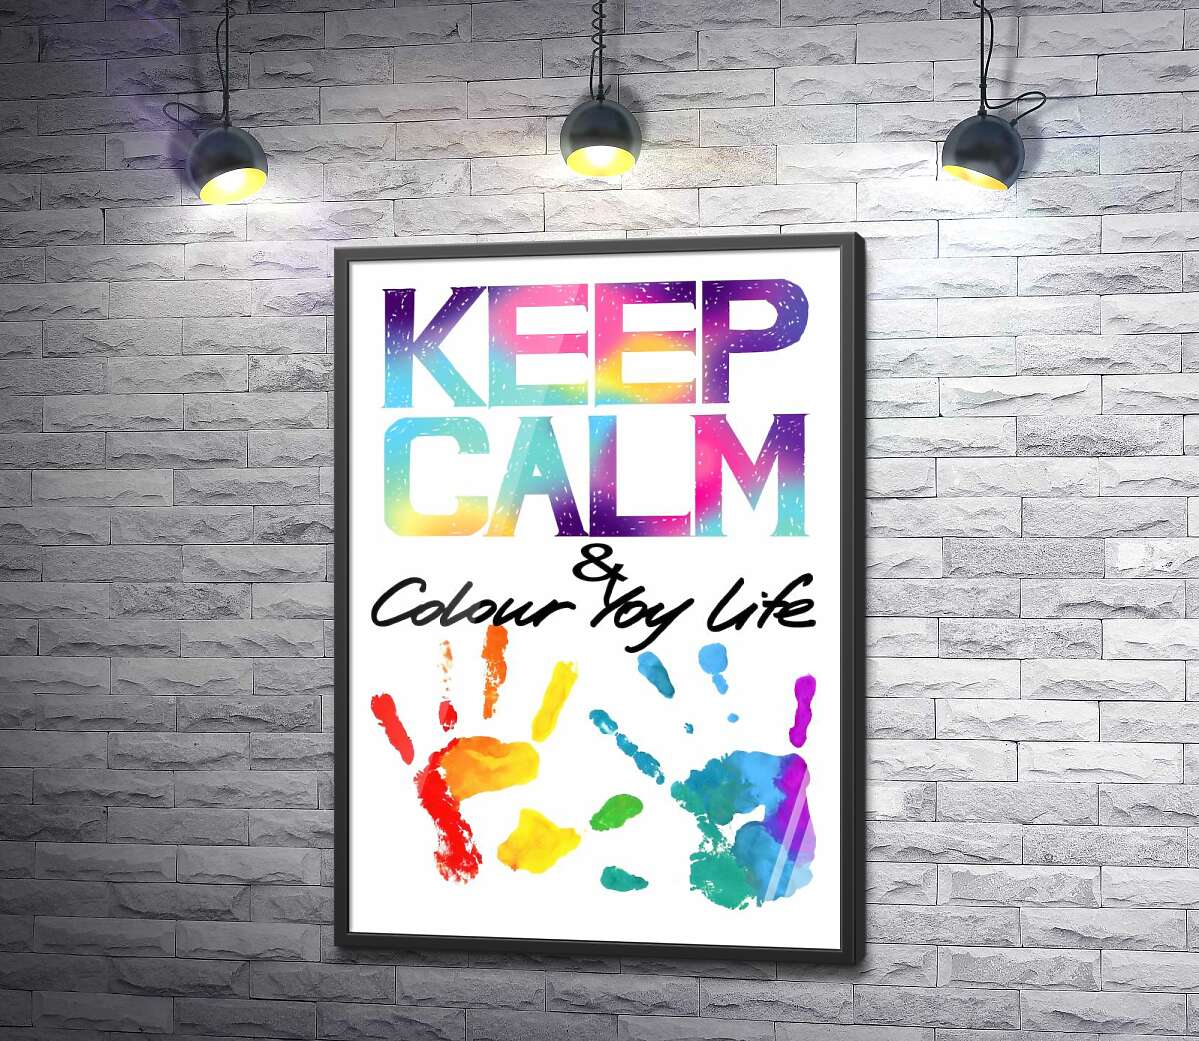 постер Радужные отпечатки рук под надписью "keep calm and colour your life"